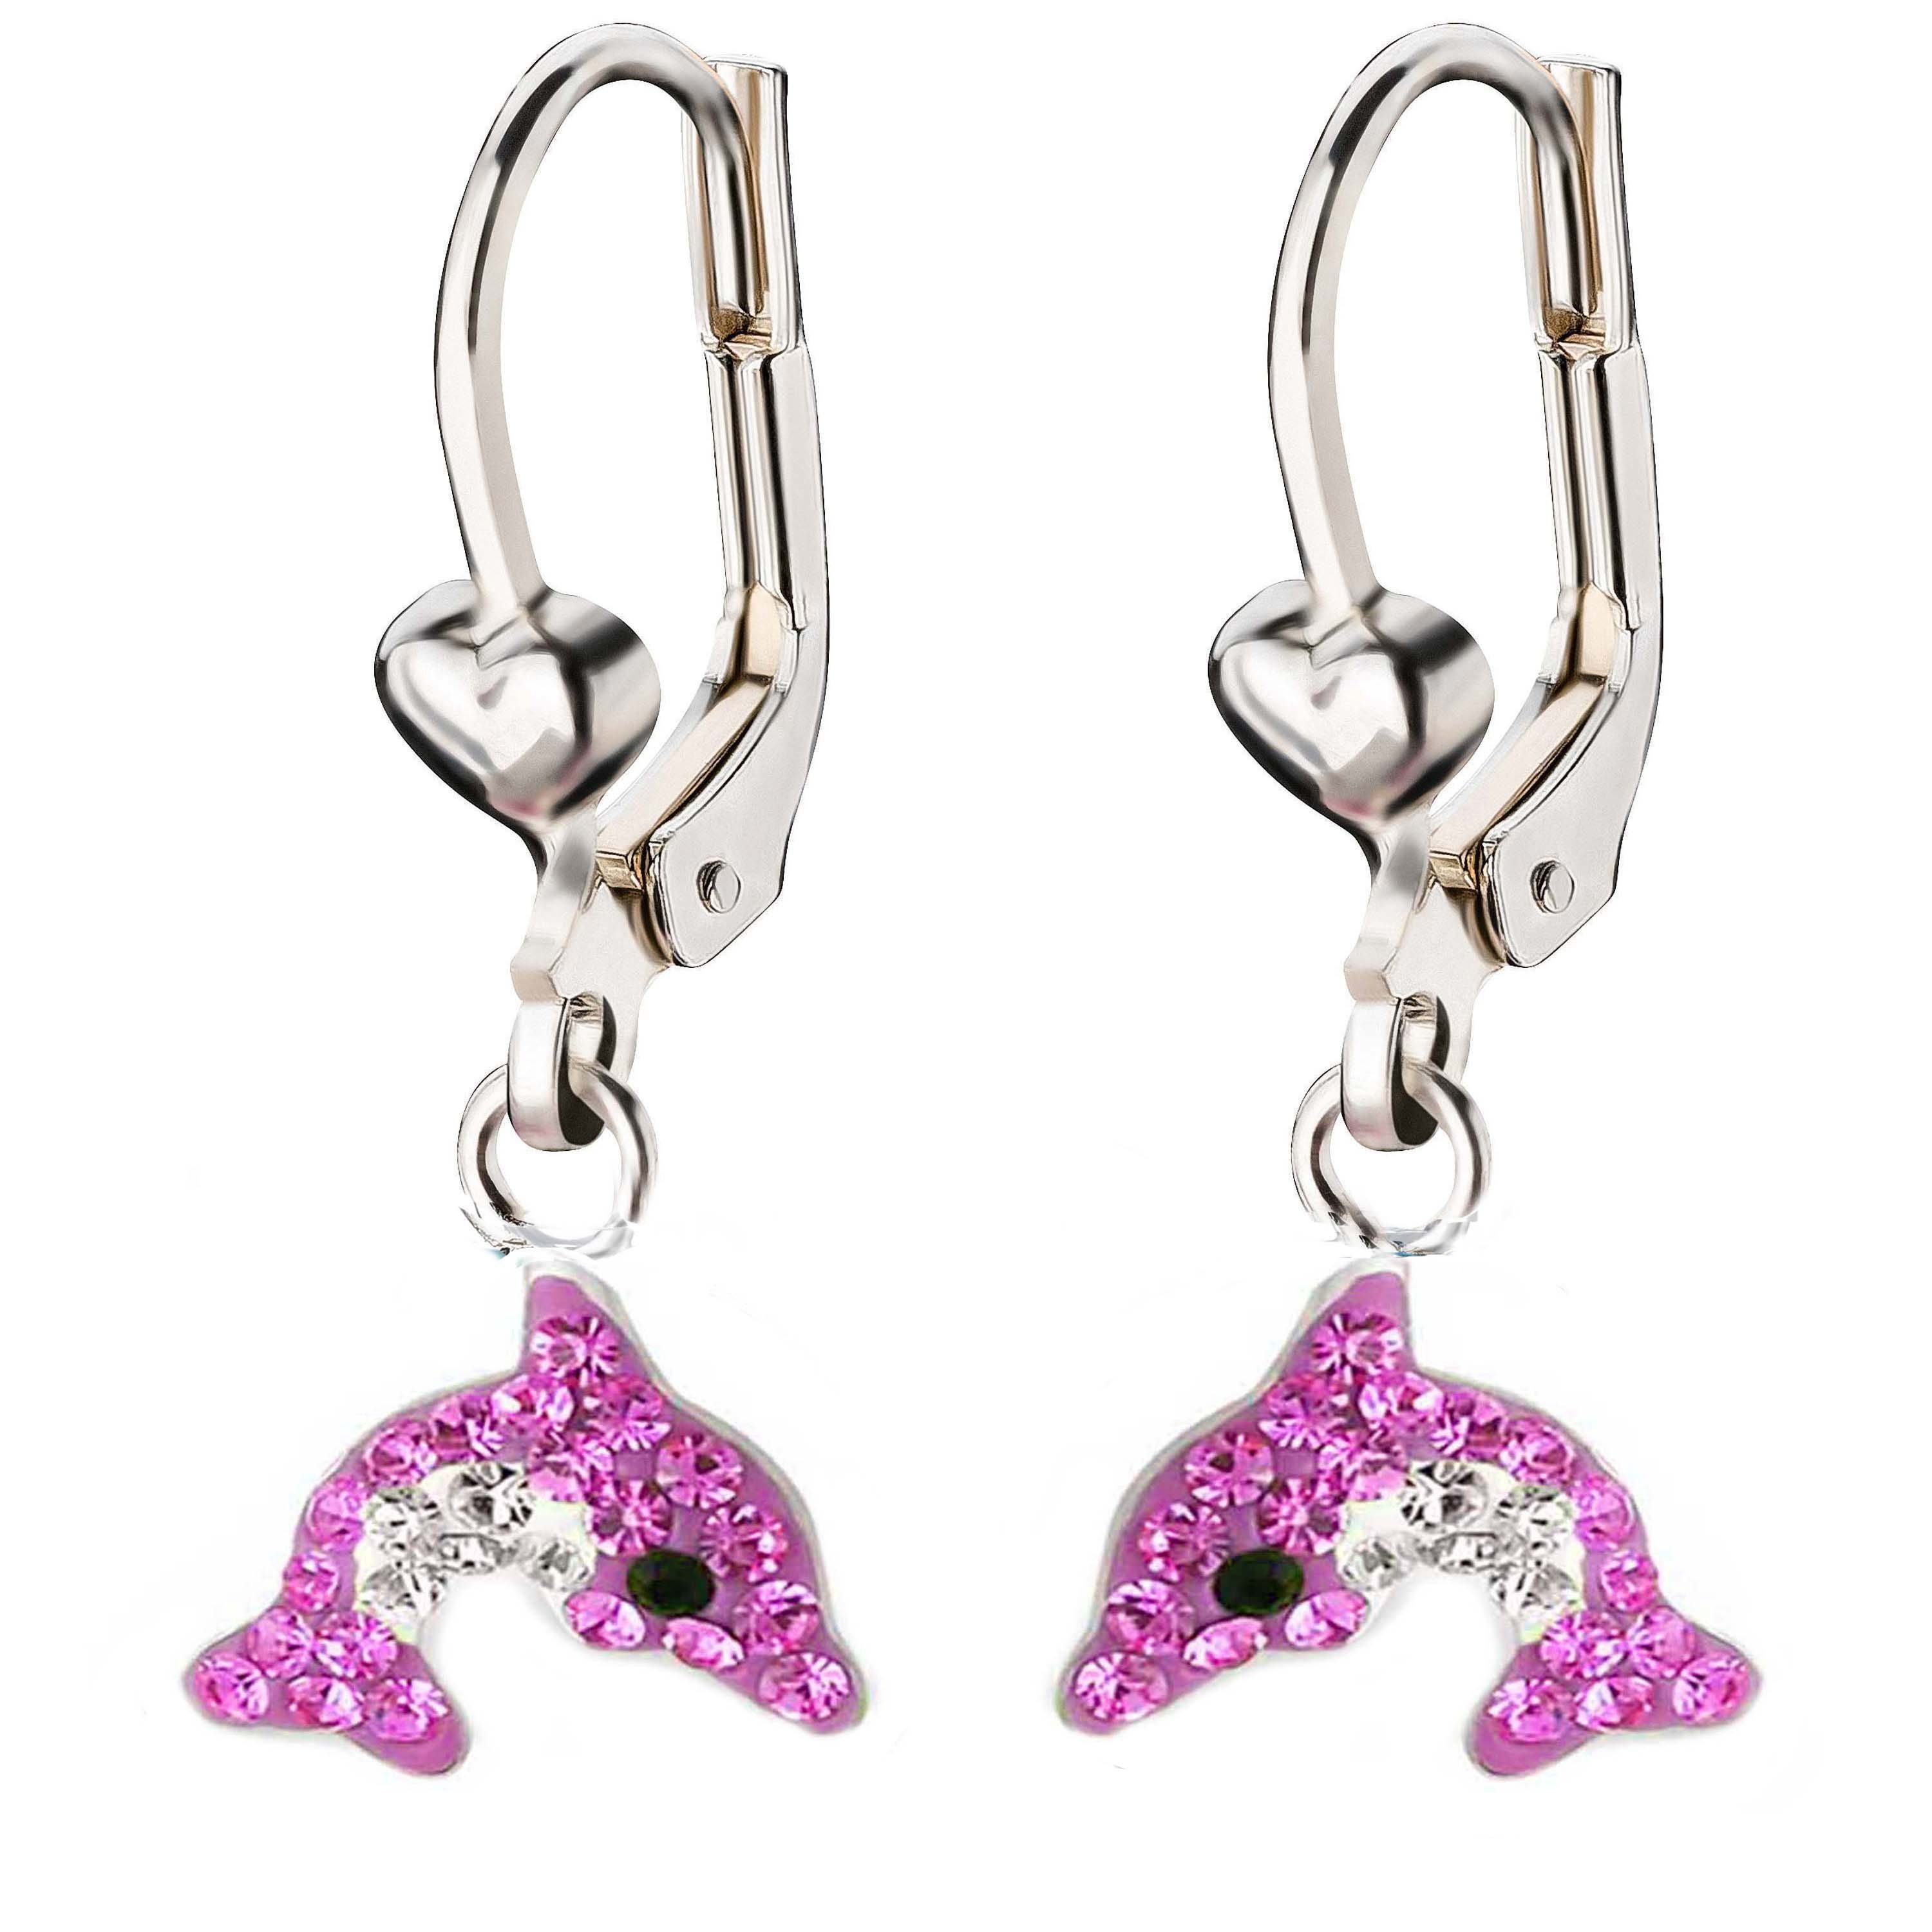 schmuck23 Paar Ohrhänger Kinder Ohrringe Delfin 925 Silber, Kinderschmuck Kristalle Mädchen Geschenk Pink/Klar